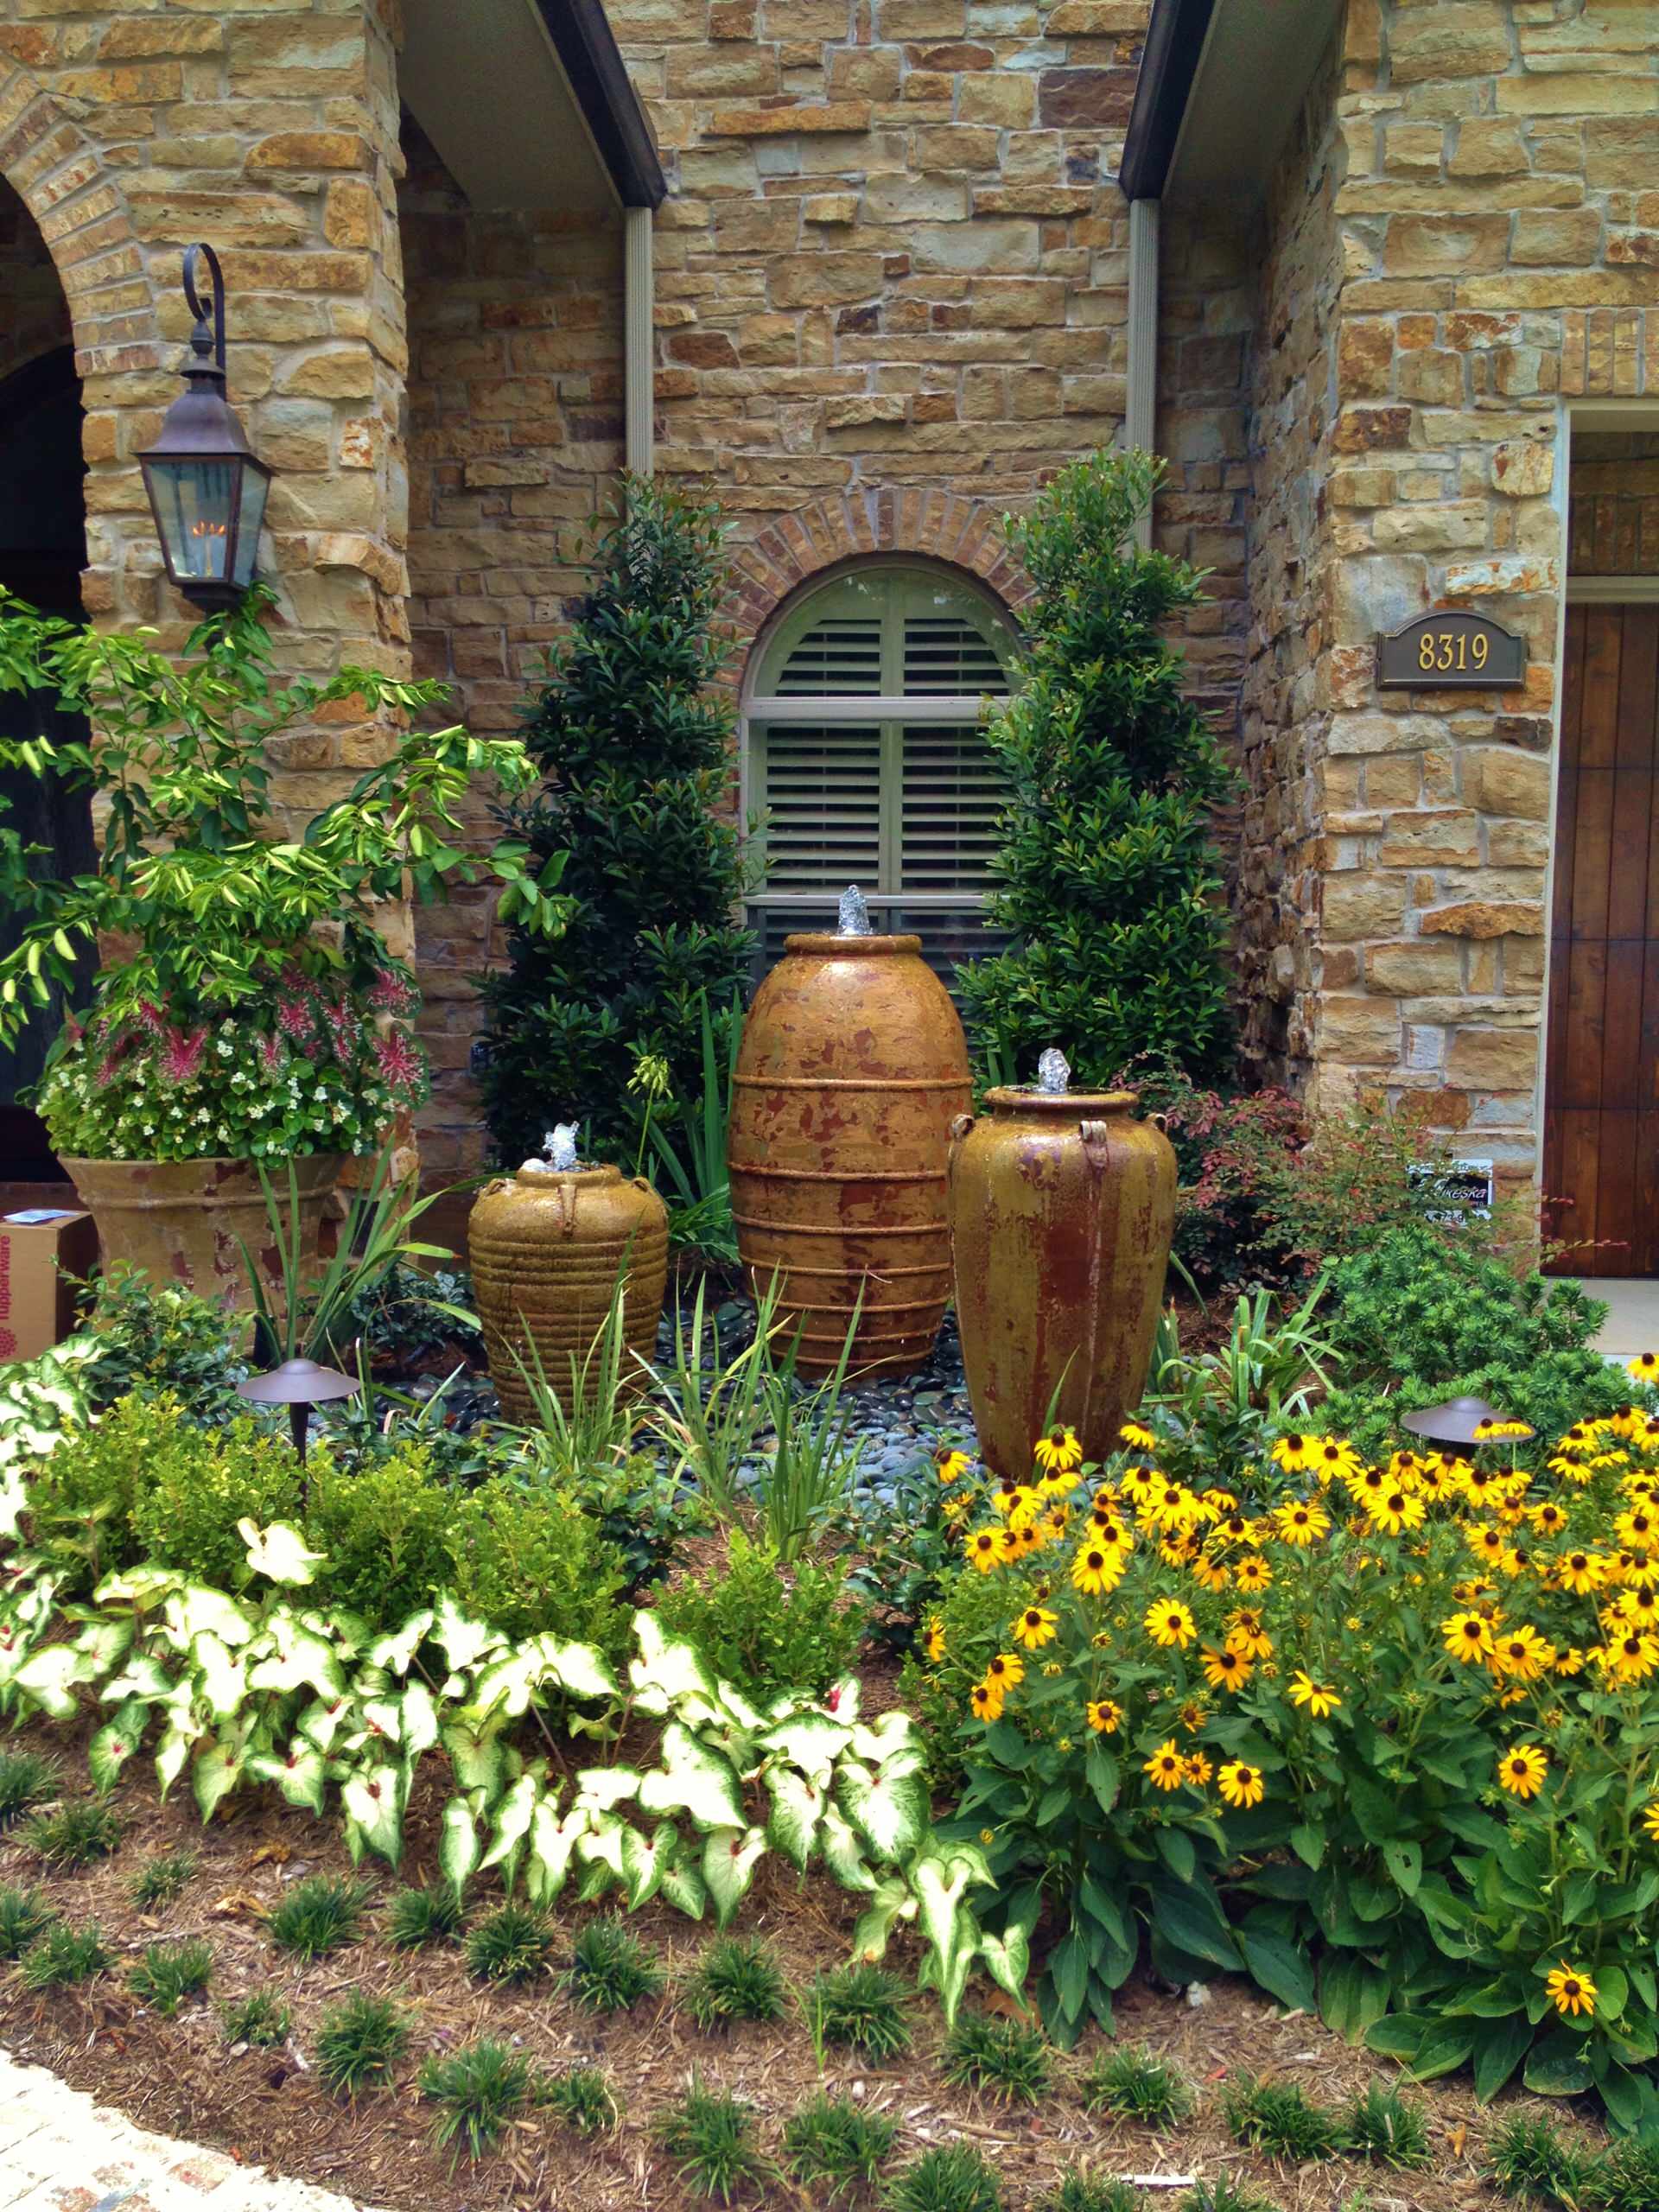 Home And Garden Design Top, Houston Texas Landscaping Ideas